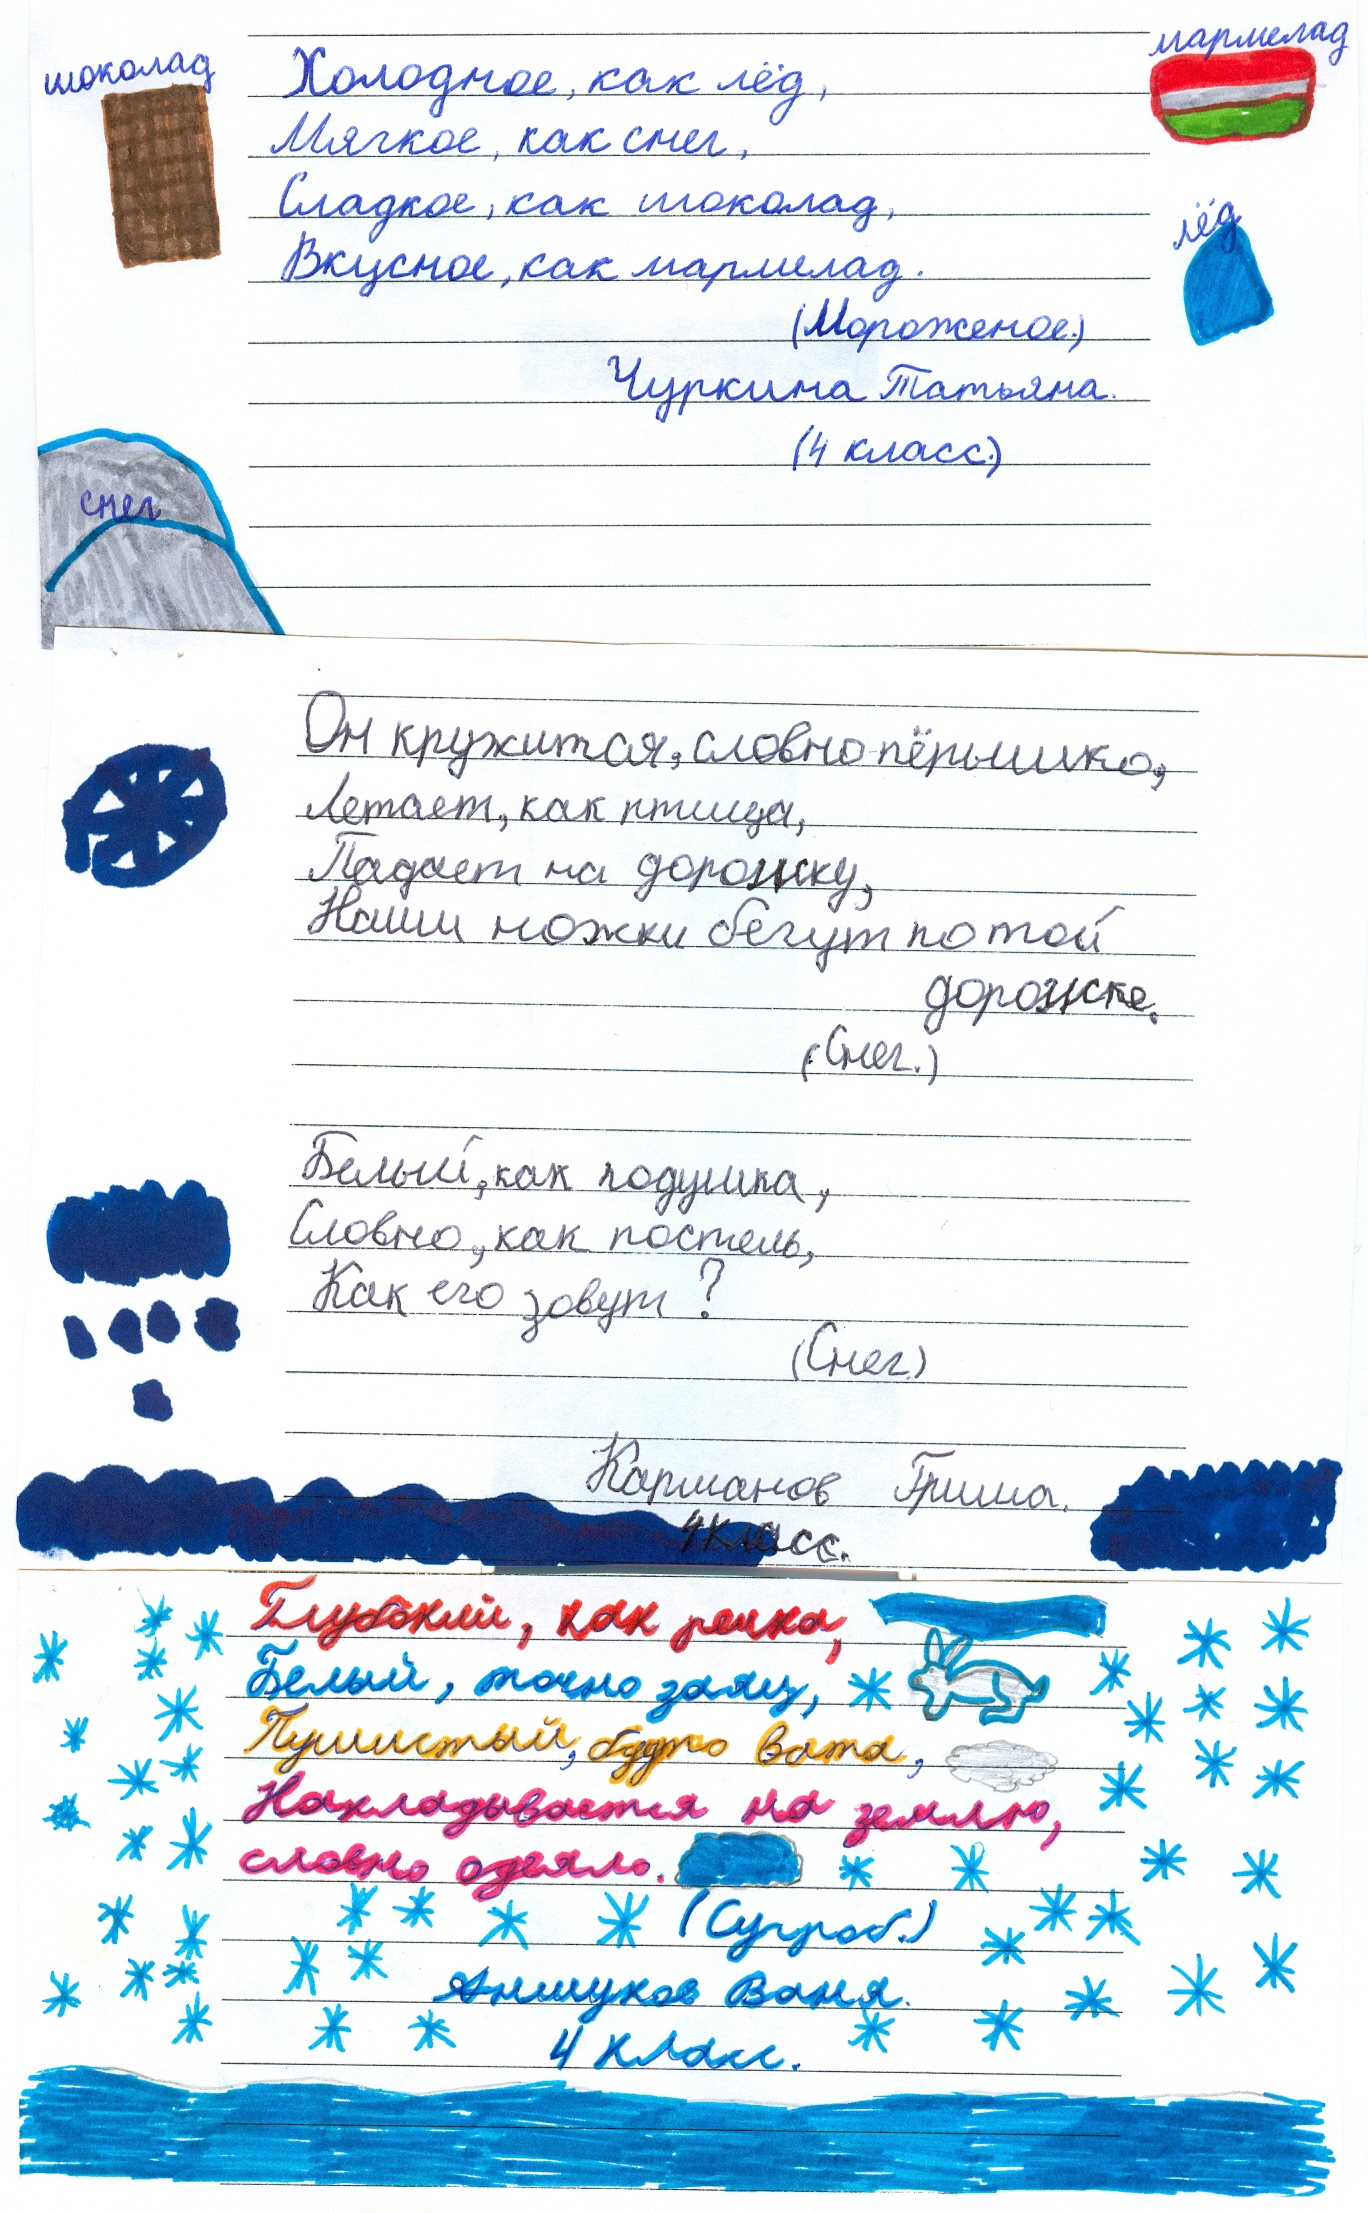 Обобщение опыта по теме «Творческие работы на уроках русского языка и литературы»